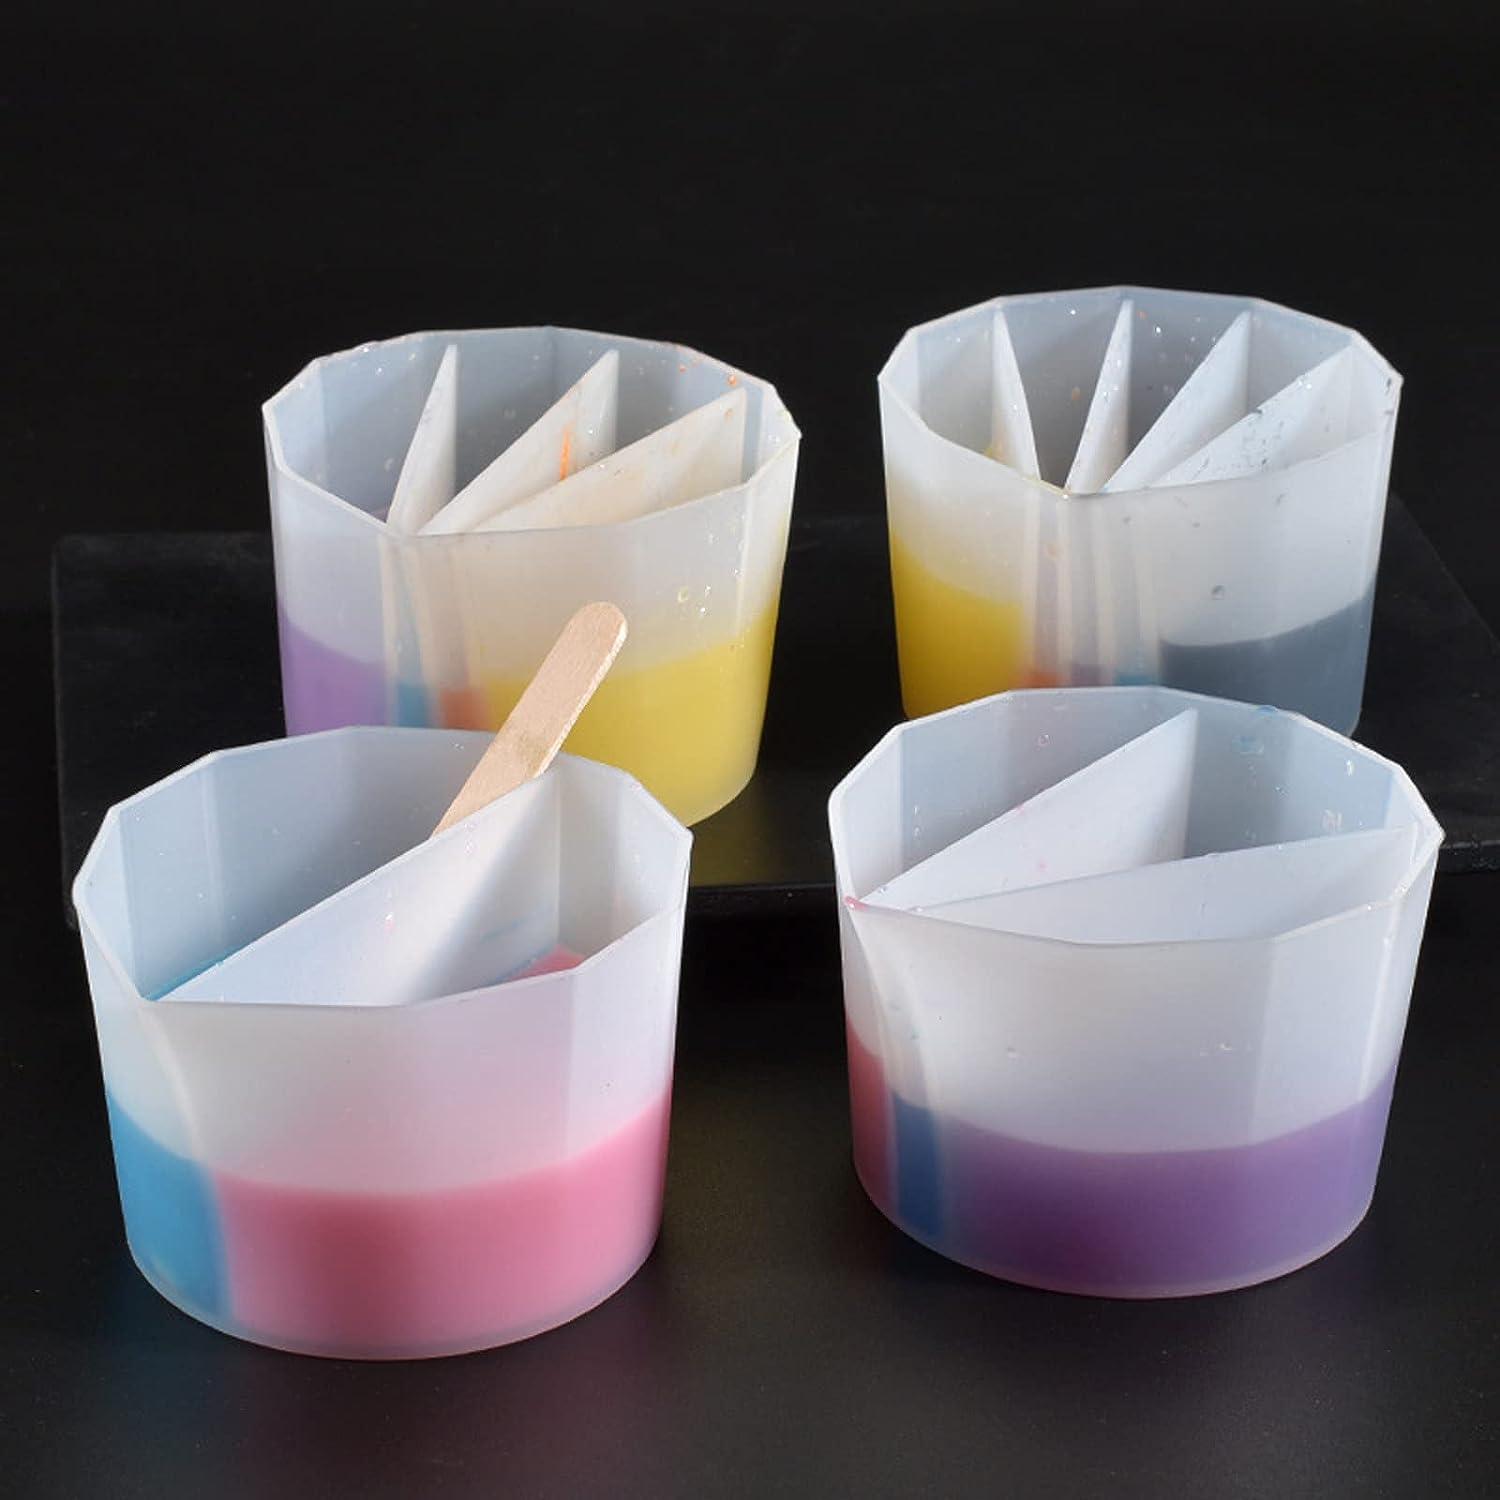 Split Cups for Paint Pouring 4pcs Silicone Pour Painting Supplies Paint Pour Split Cup for Acrylic Resin Pouring Reusable Paint Cups for Painting